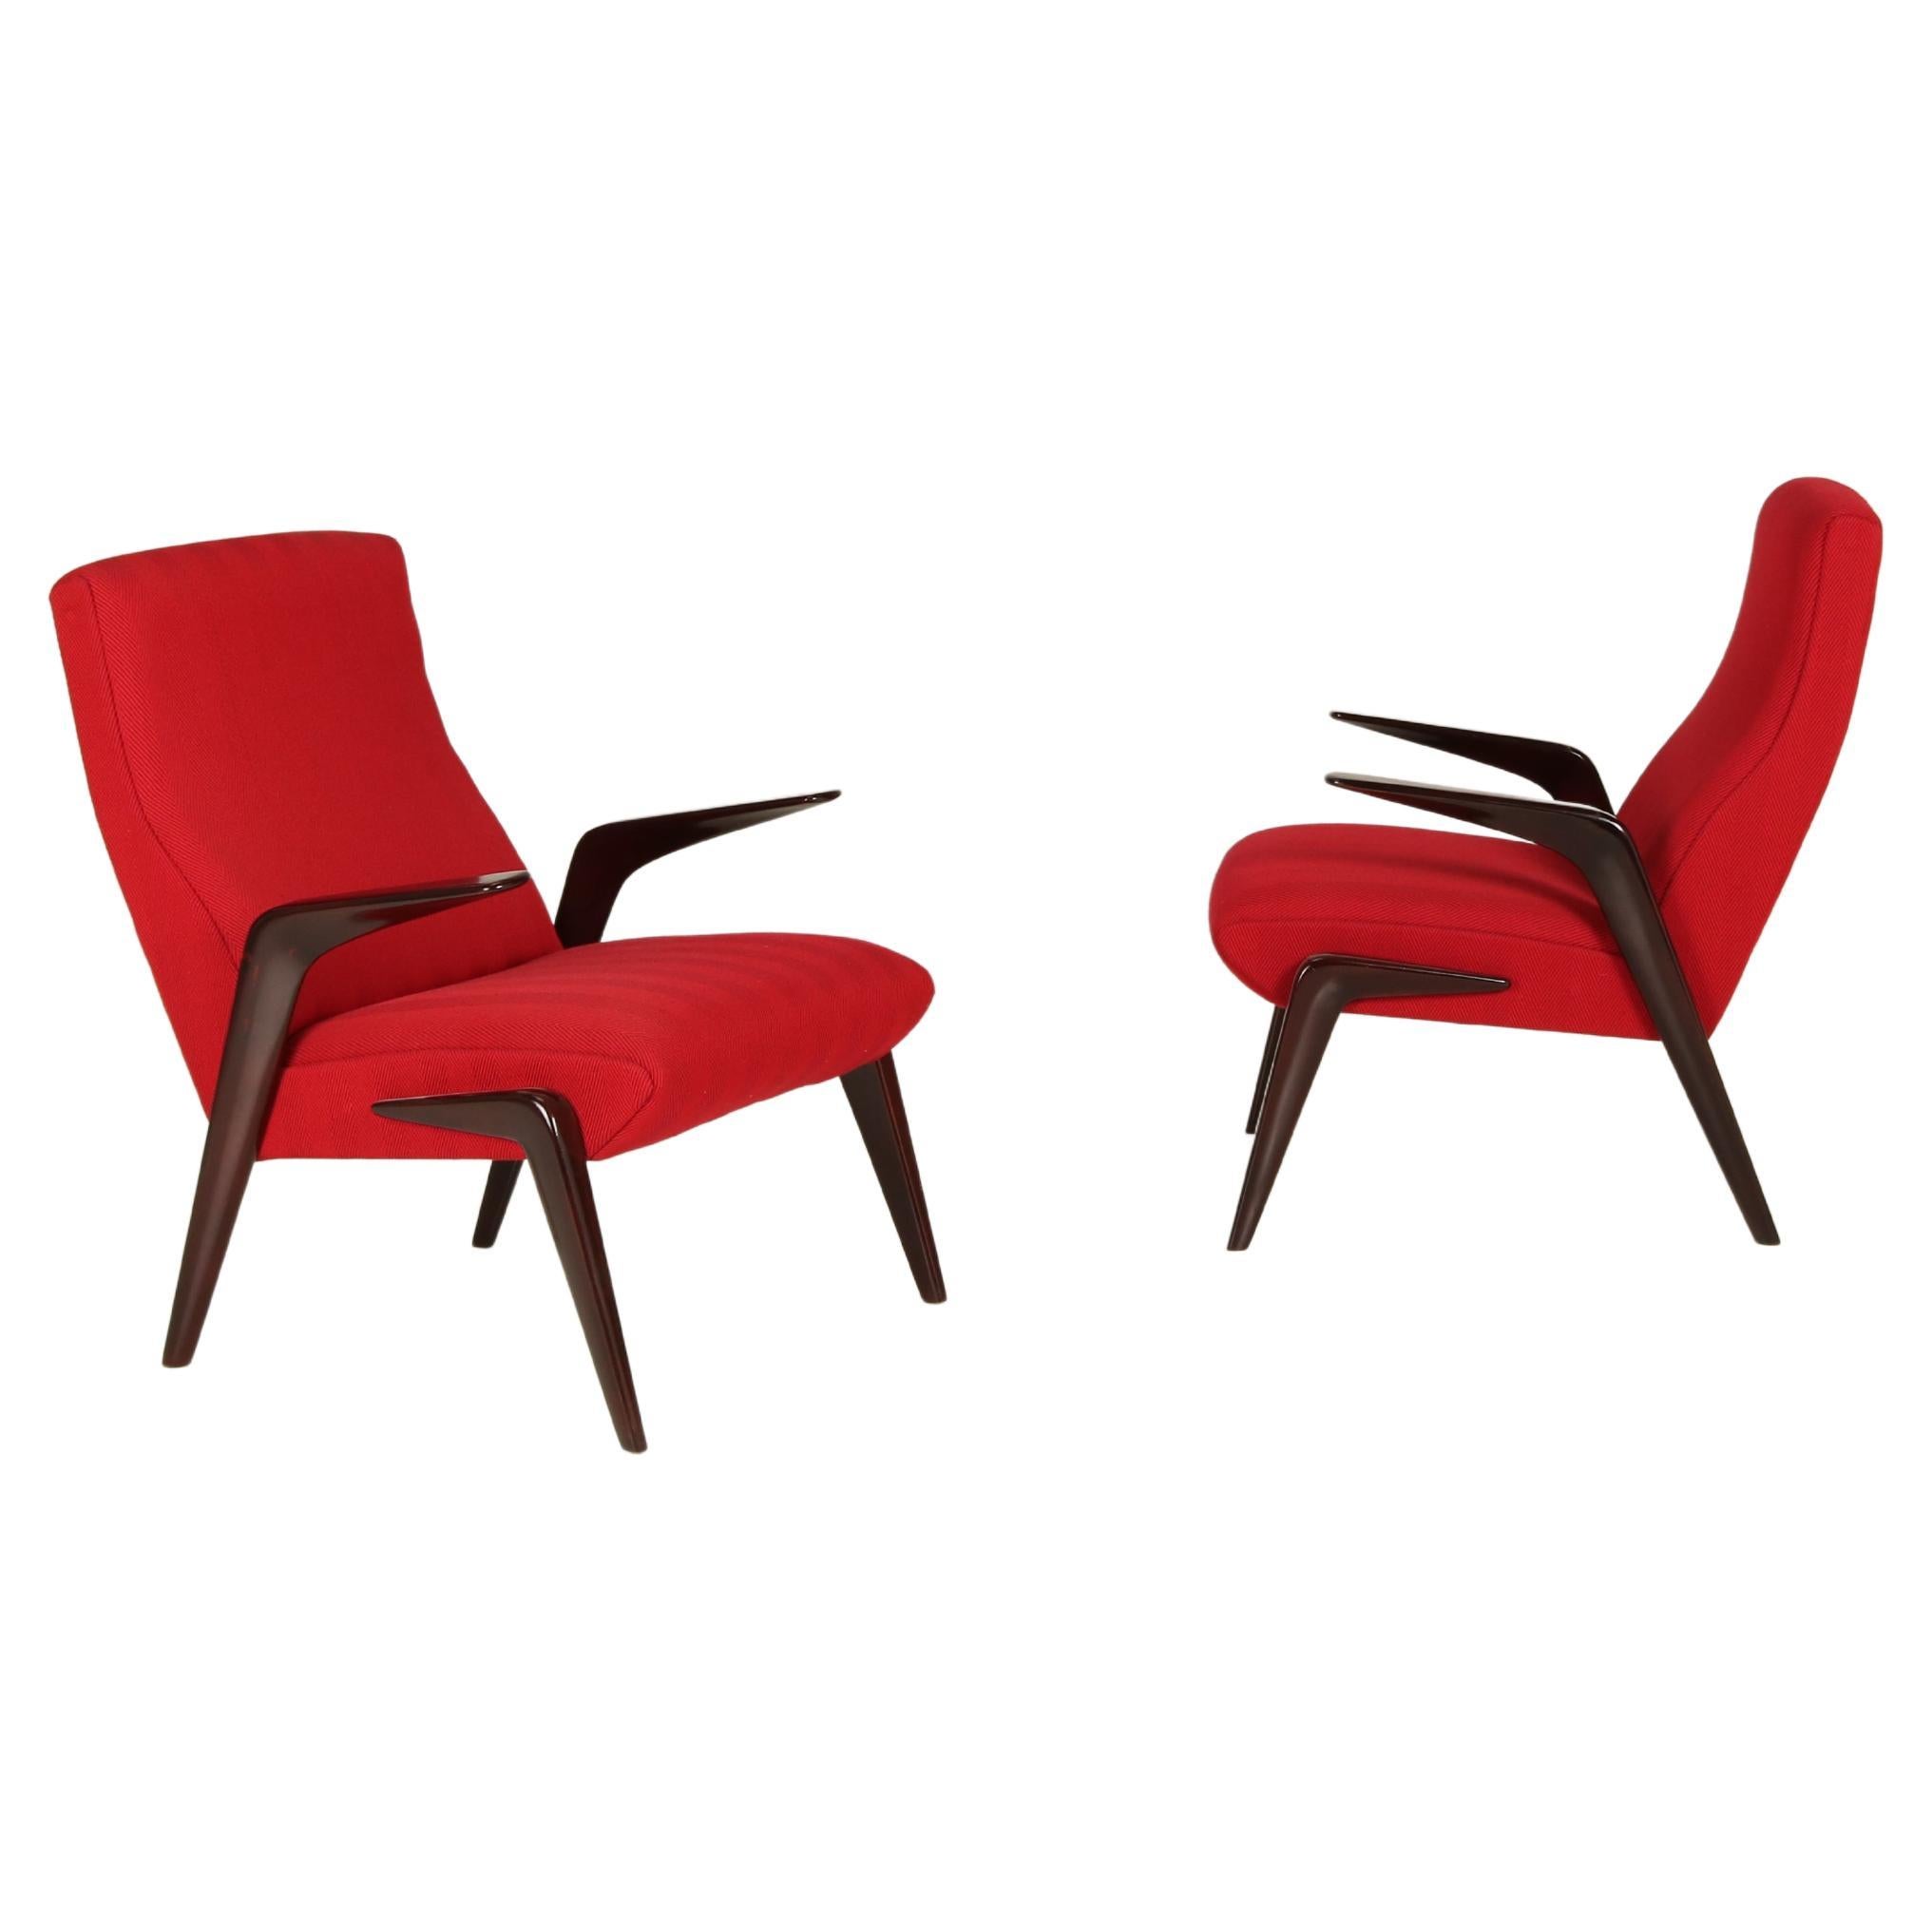 Diese einzigartigen Sessel, die von Osvaldo Borsani entworfen und von Tecno in Como, Italien, hergestellt wurden, stammen aus dem Jahr 1954. Das Modell P71 ist eine der ersten Kreationen von Tecno, die auf der Triennale X in Mailand im selben Jahr